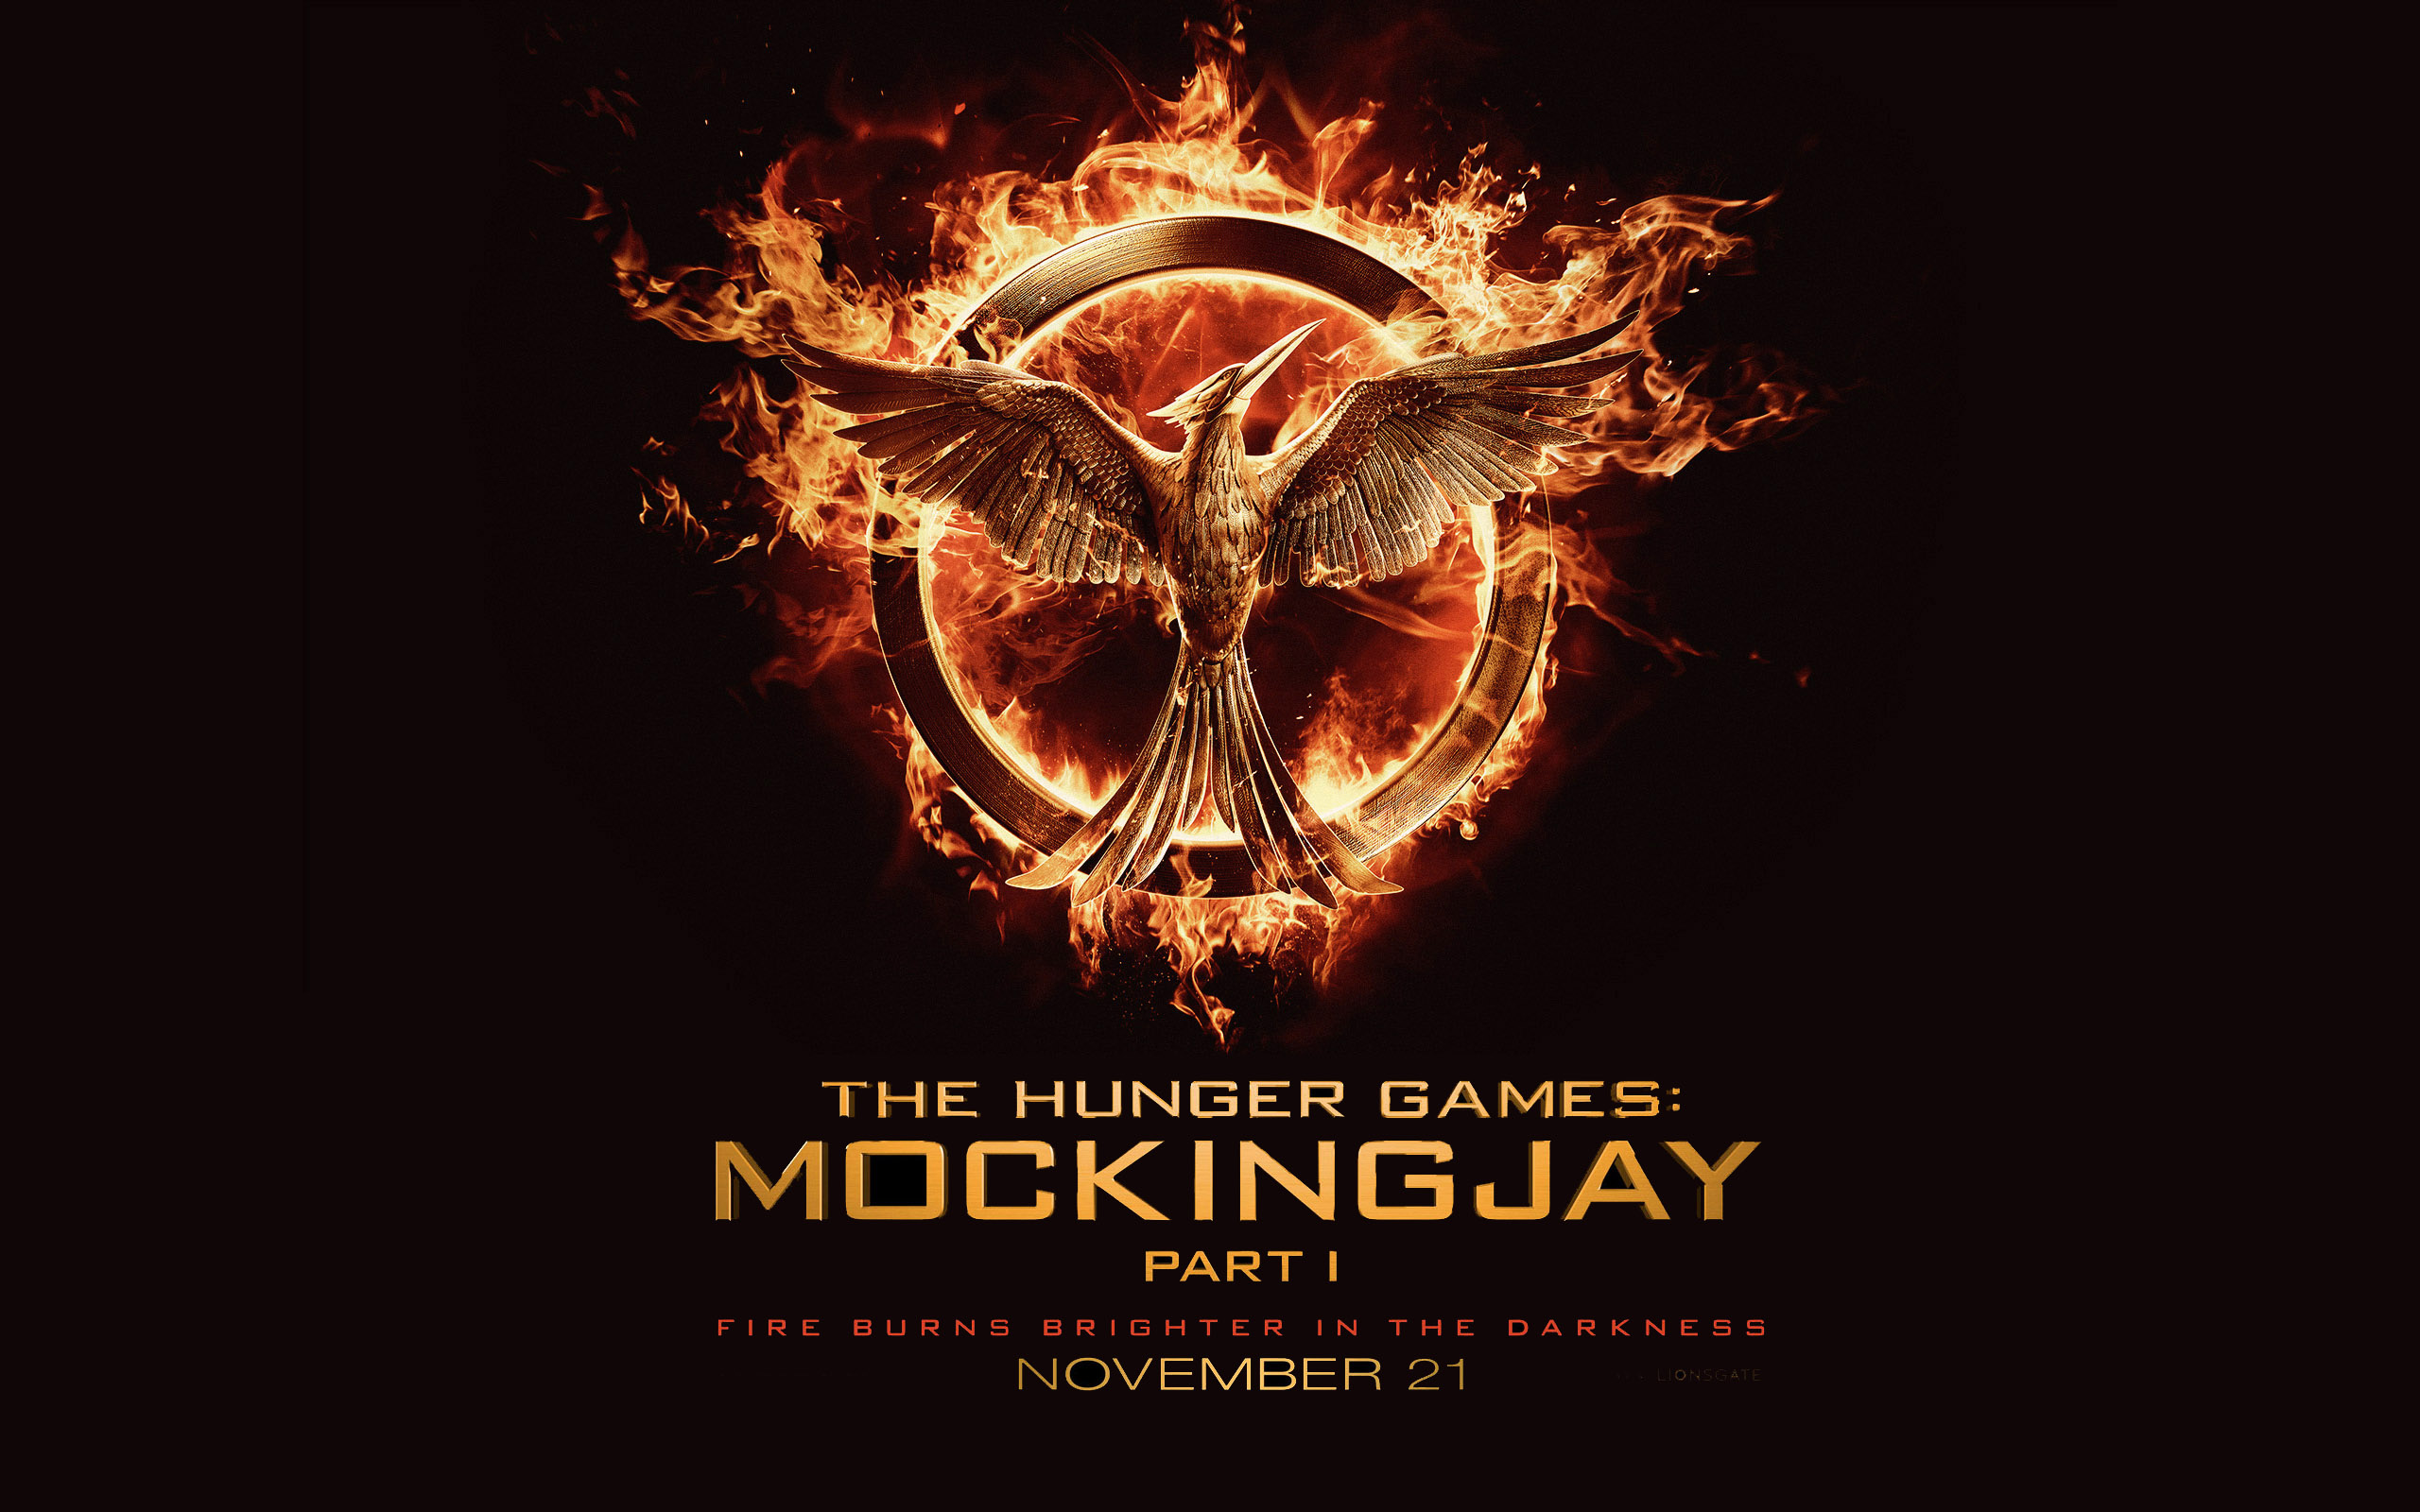 Enjoy the new Full Length Trailer for 'Hunger Games Mockingjay Part I